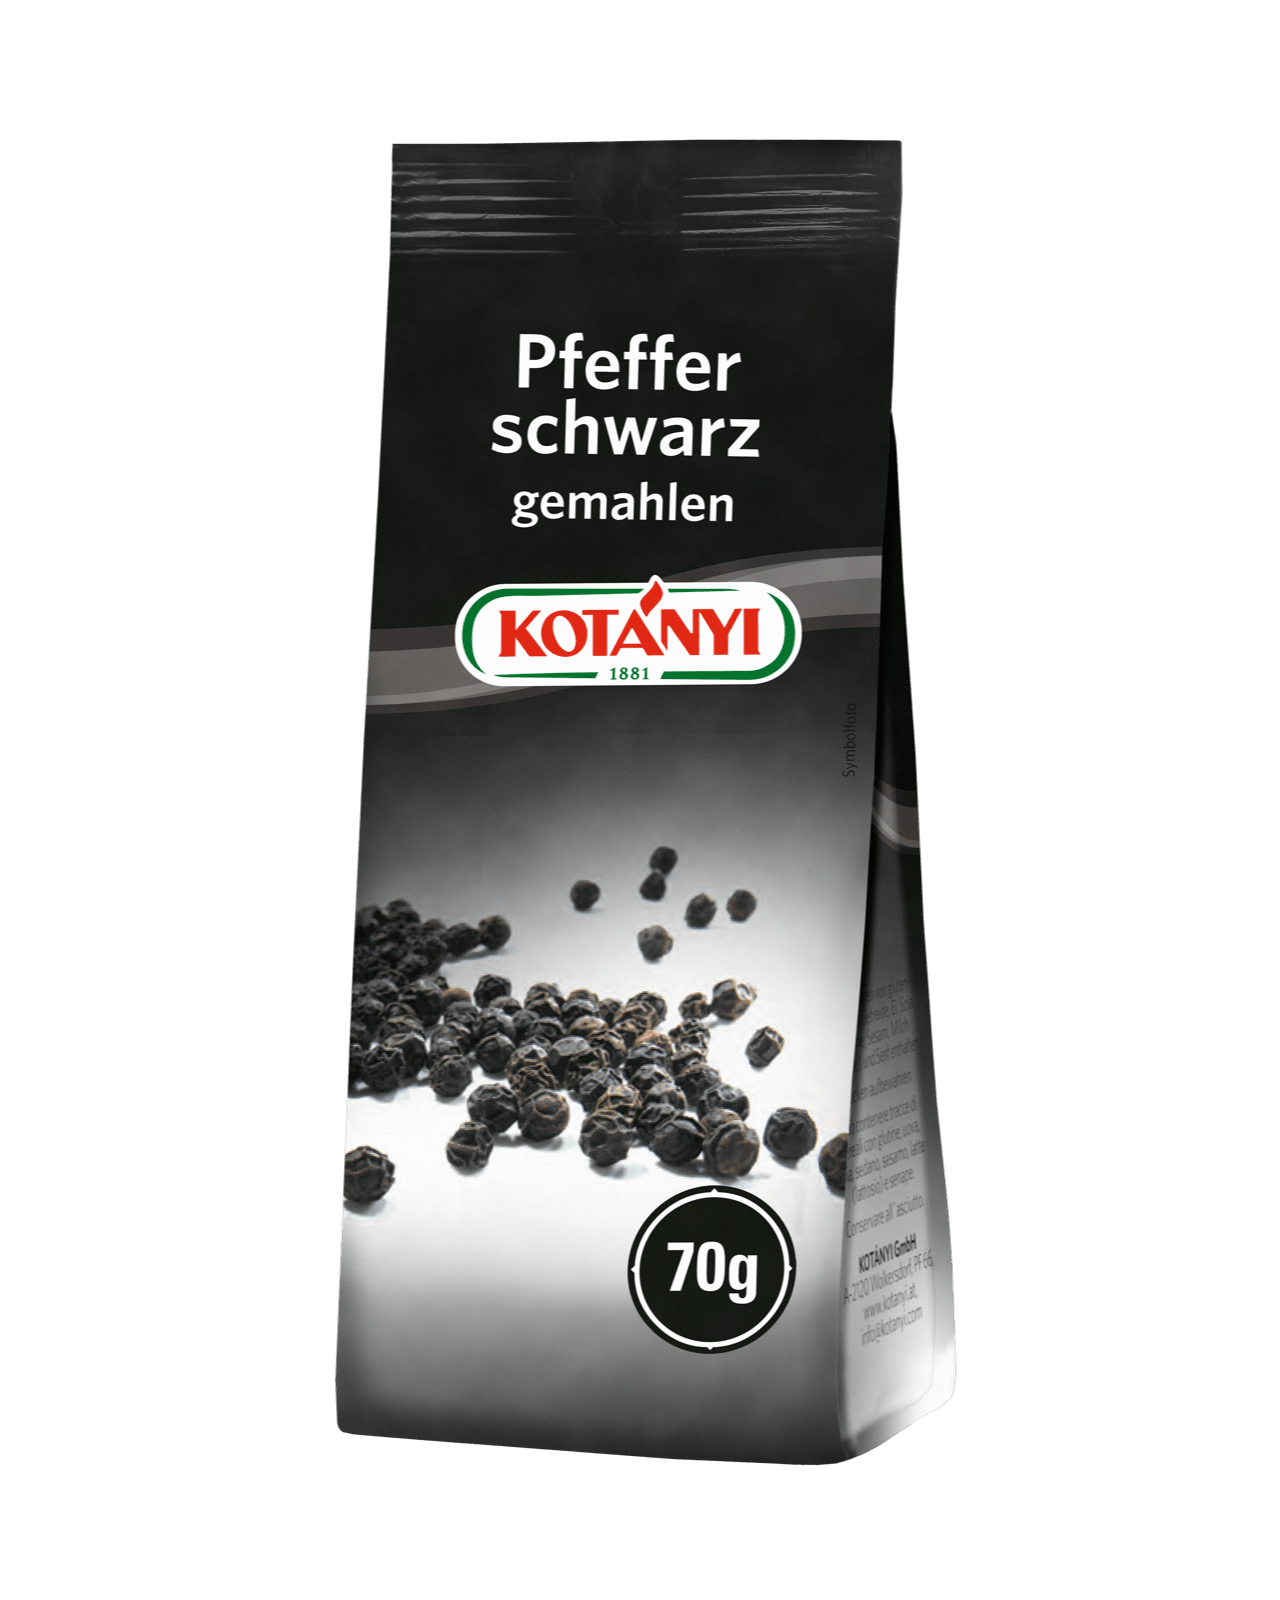 Kotányi schwarzer Pfeffer gemahlen in 70g Aromaschutzpackung